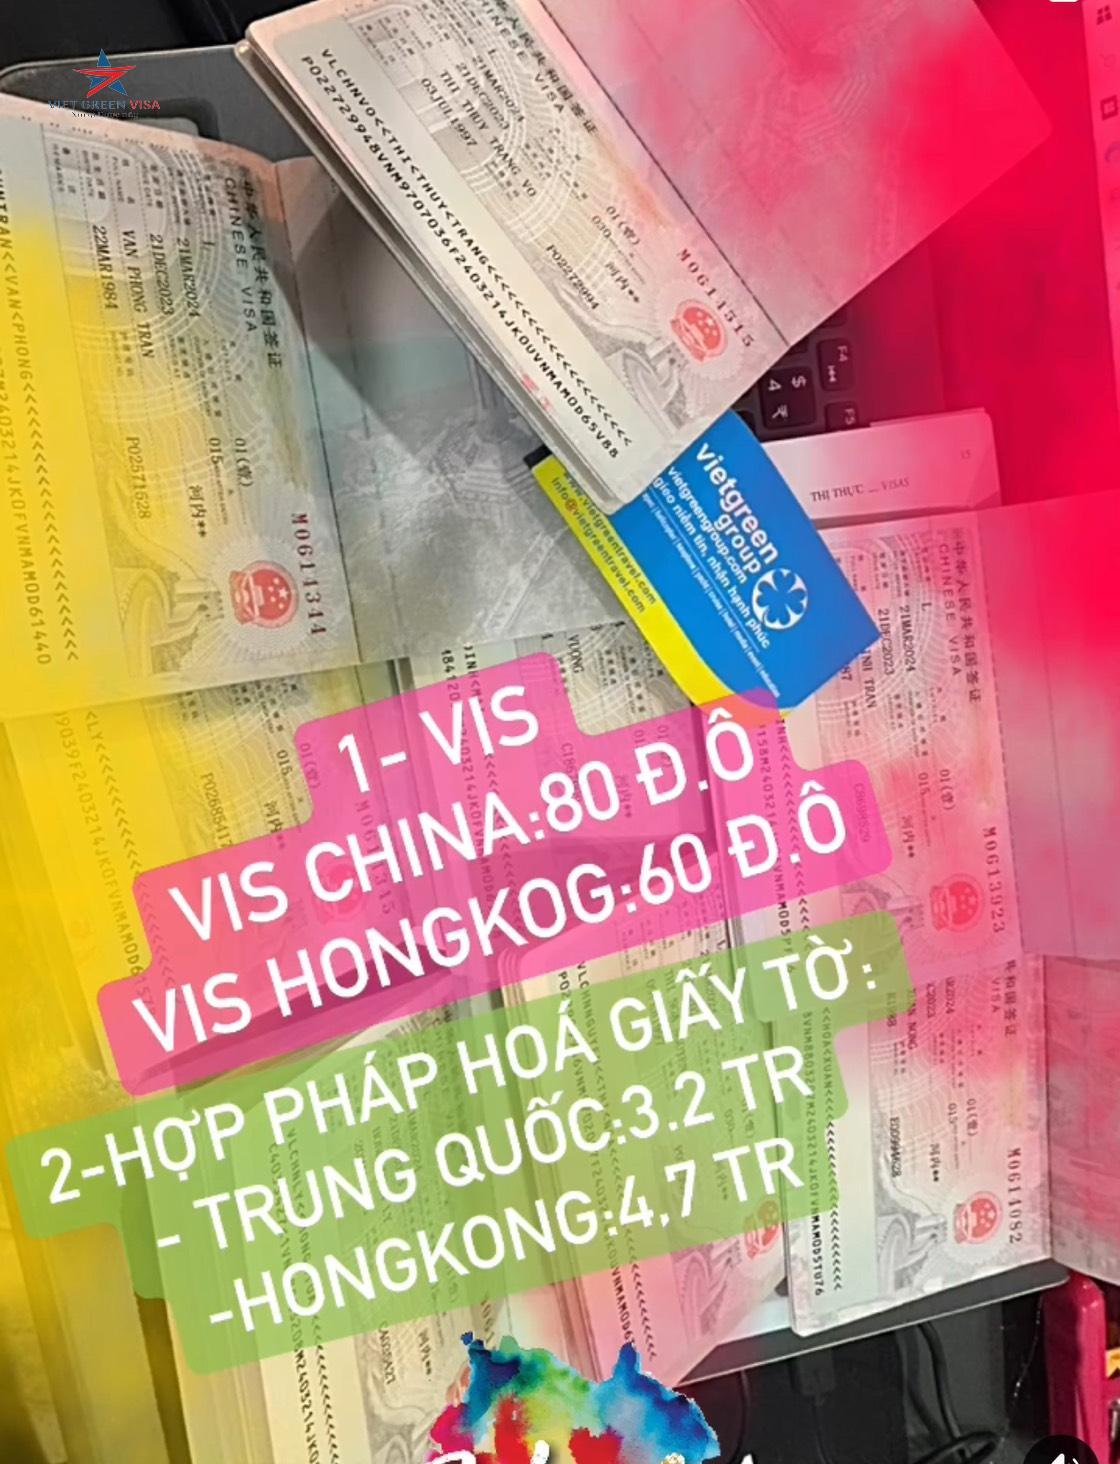 Dịch vụ xin visa Trung Quốc tại Bà Rịa - Vũng Tàu uy tín